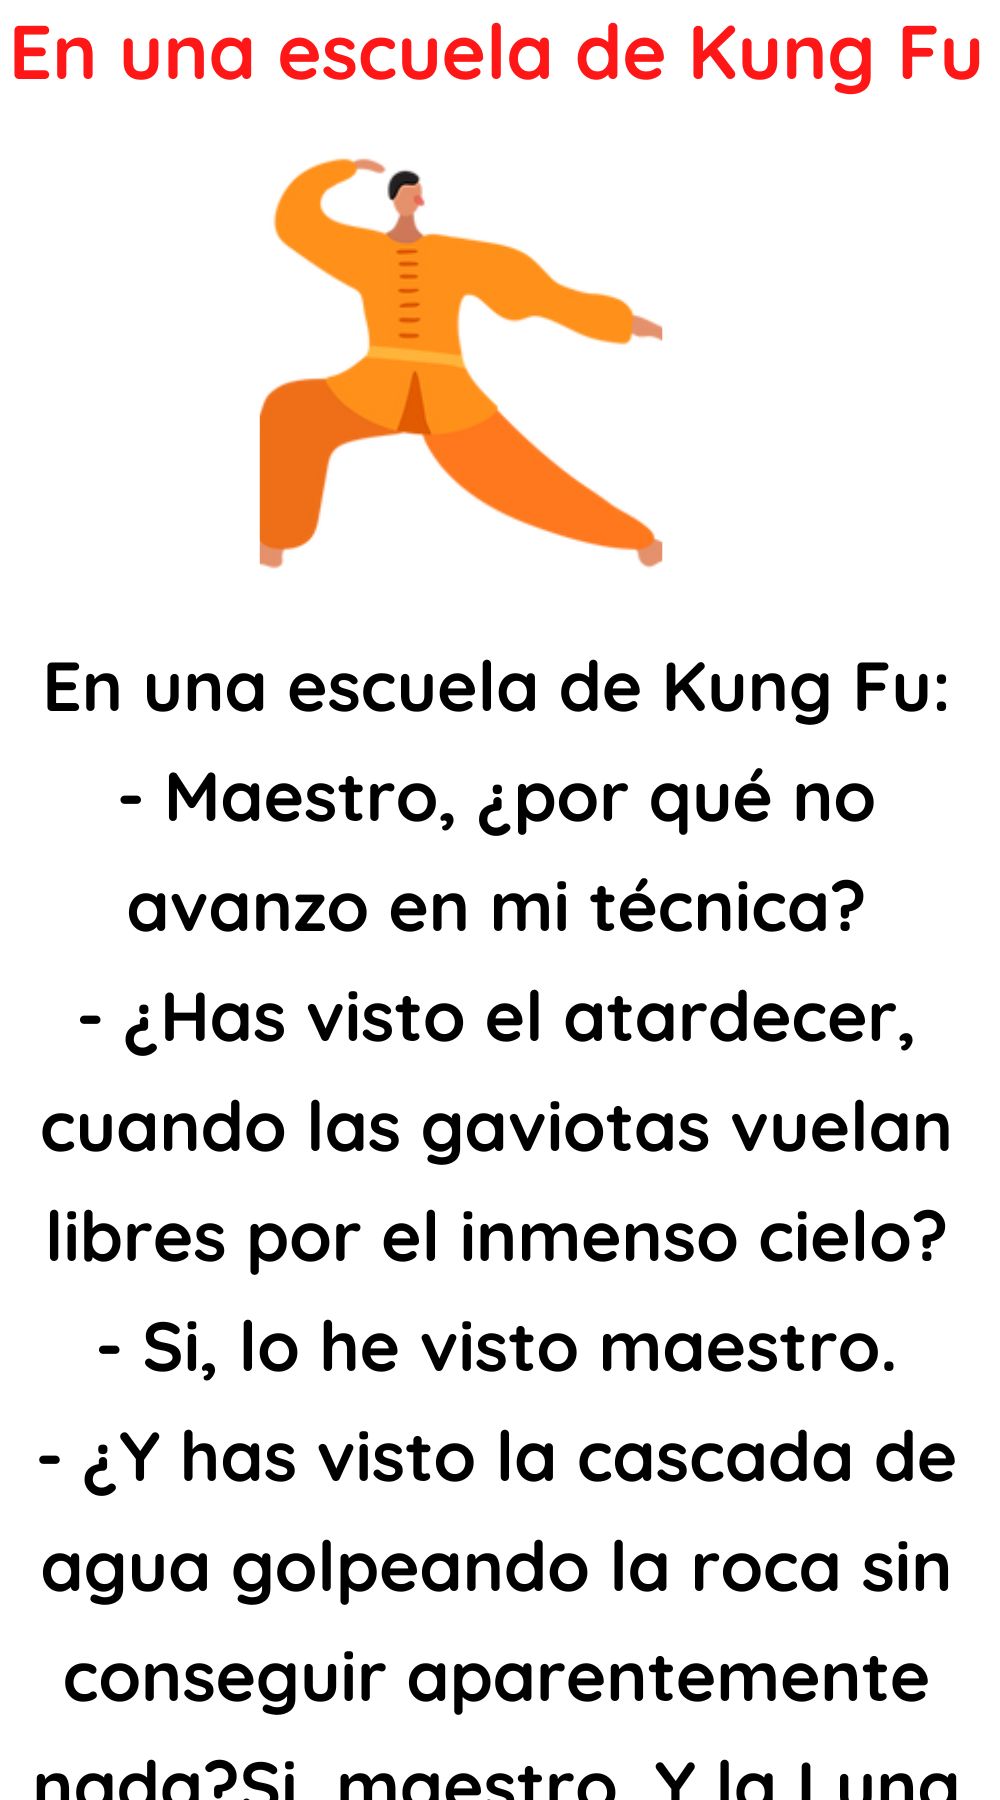 En una escuela de Kung Fu